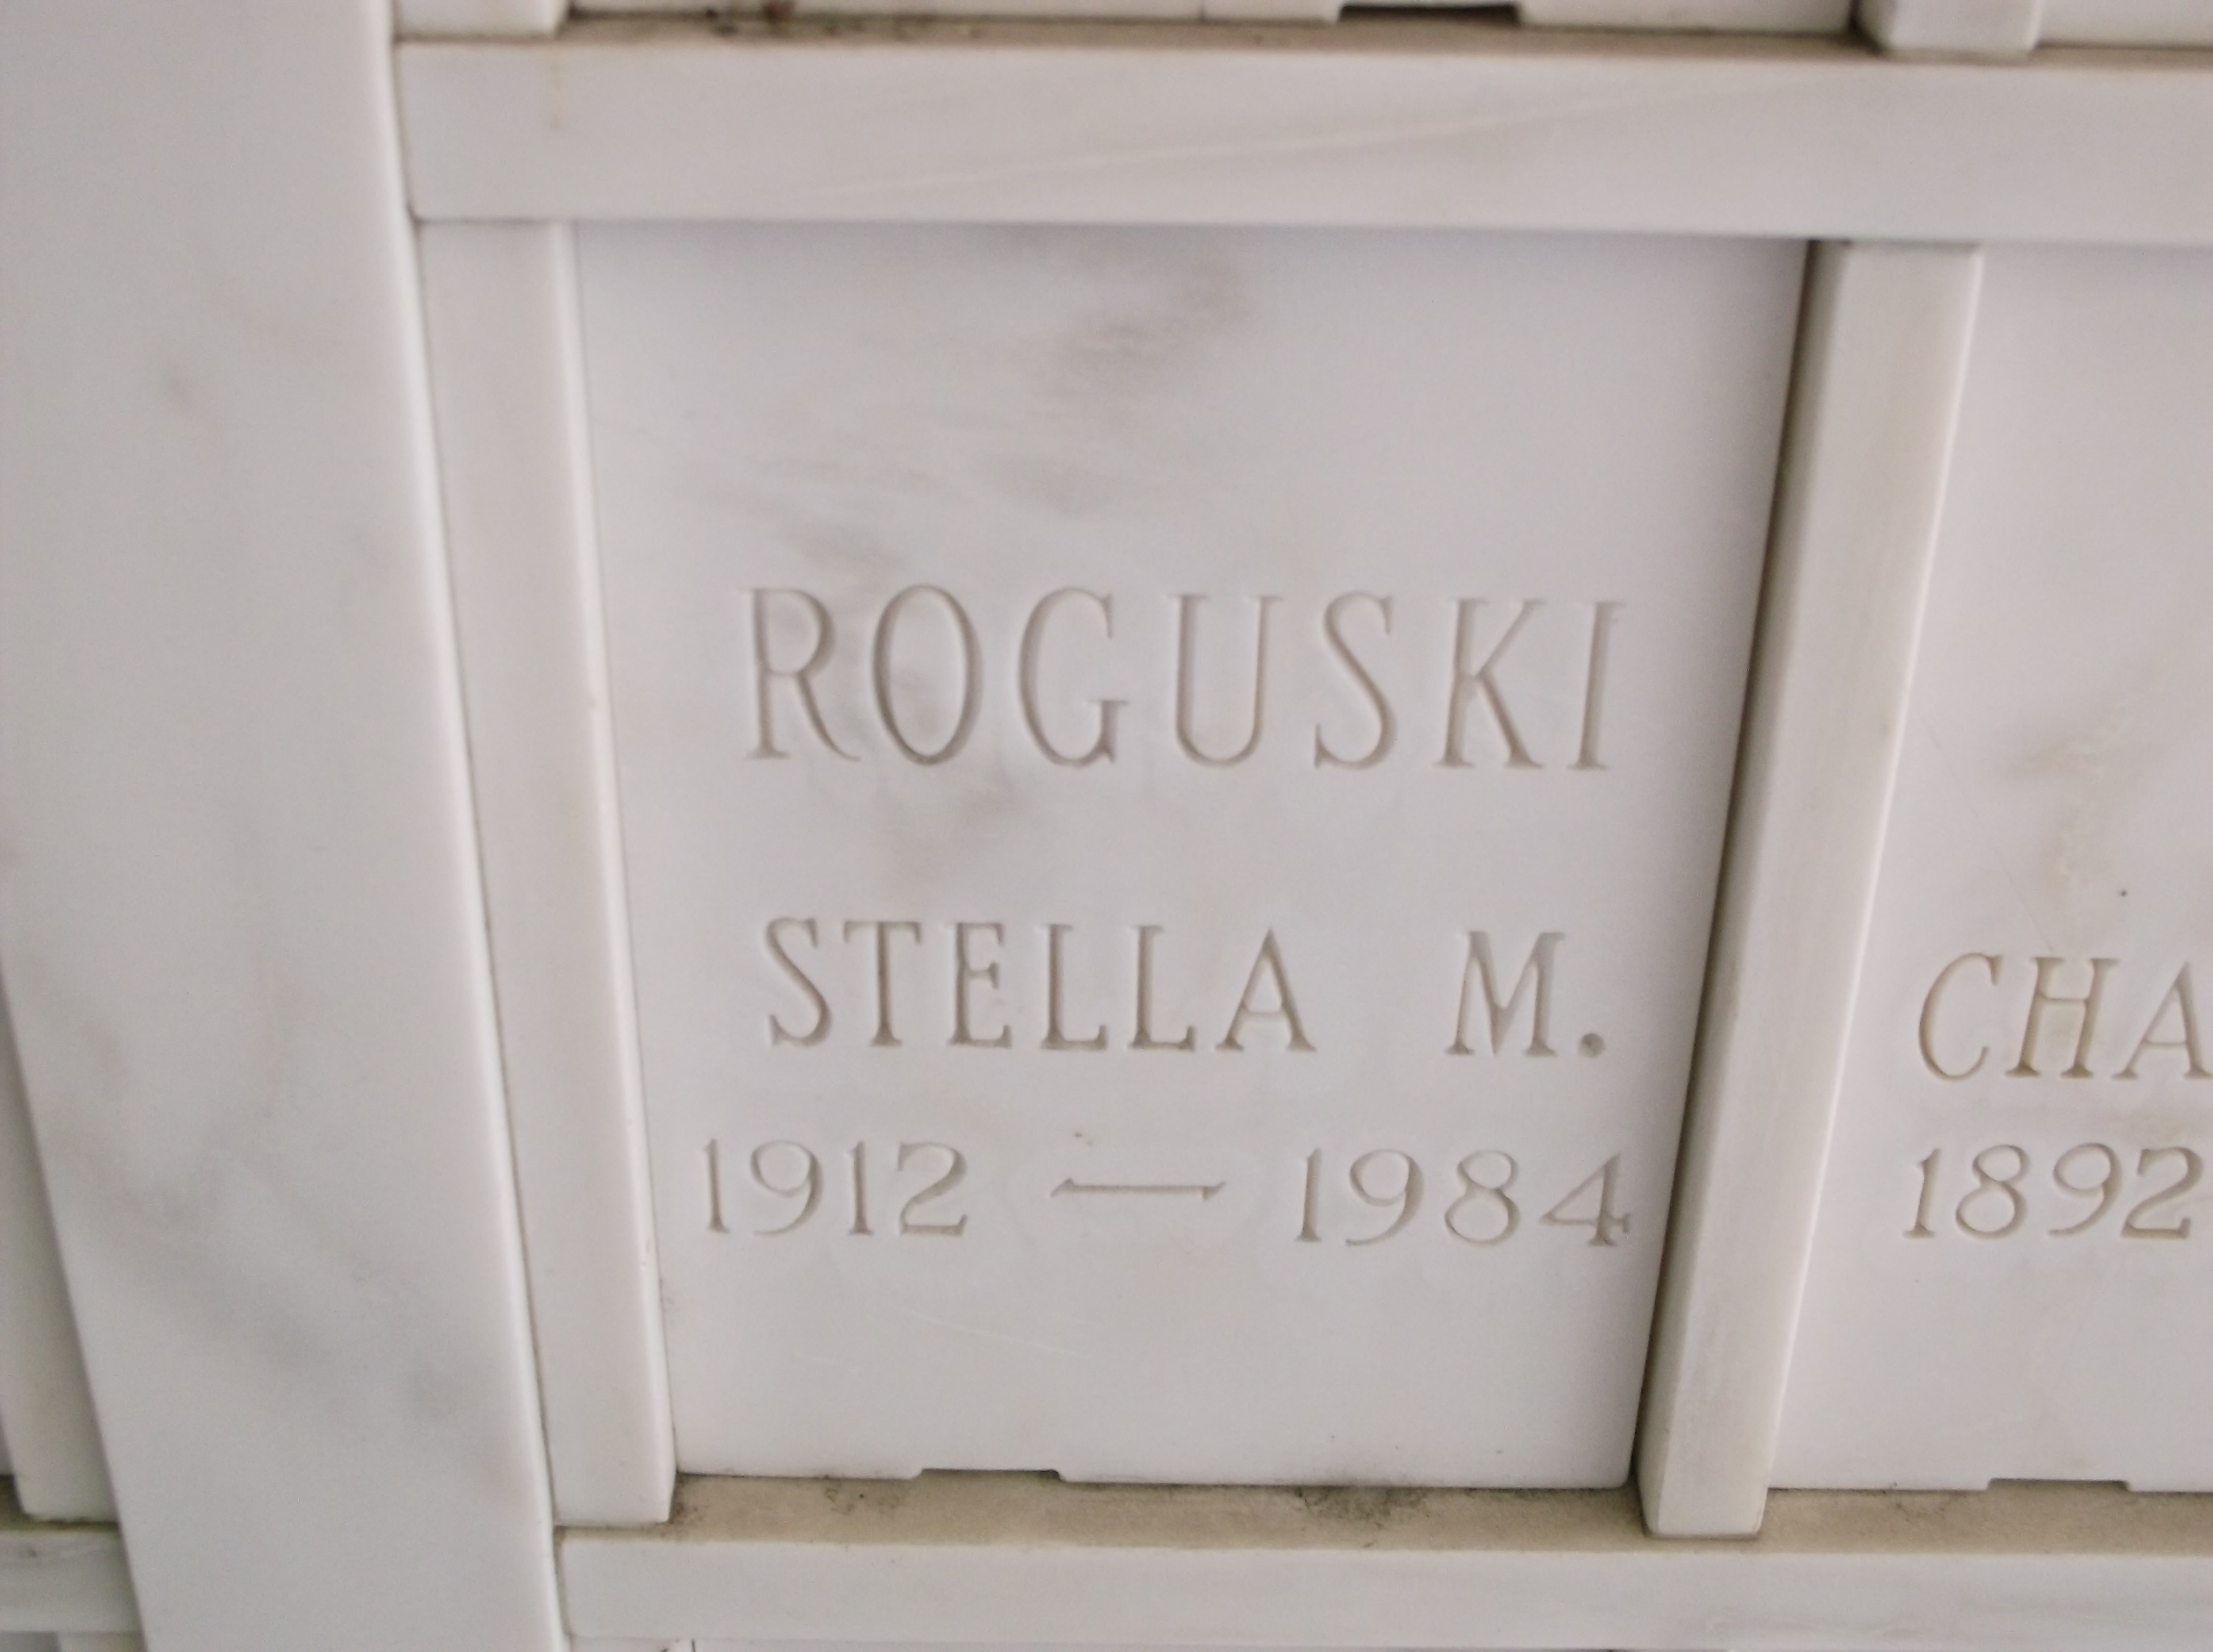 Stella M Roguski